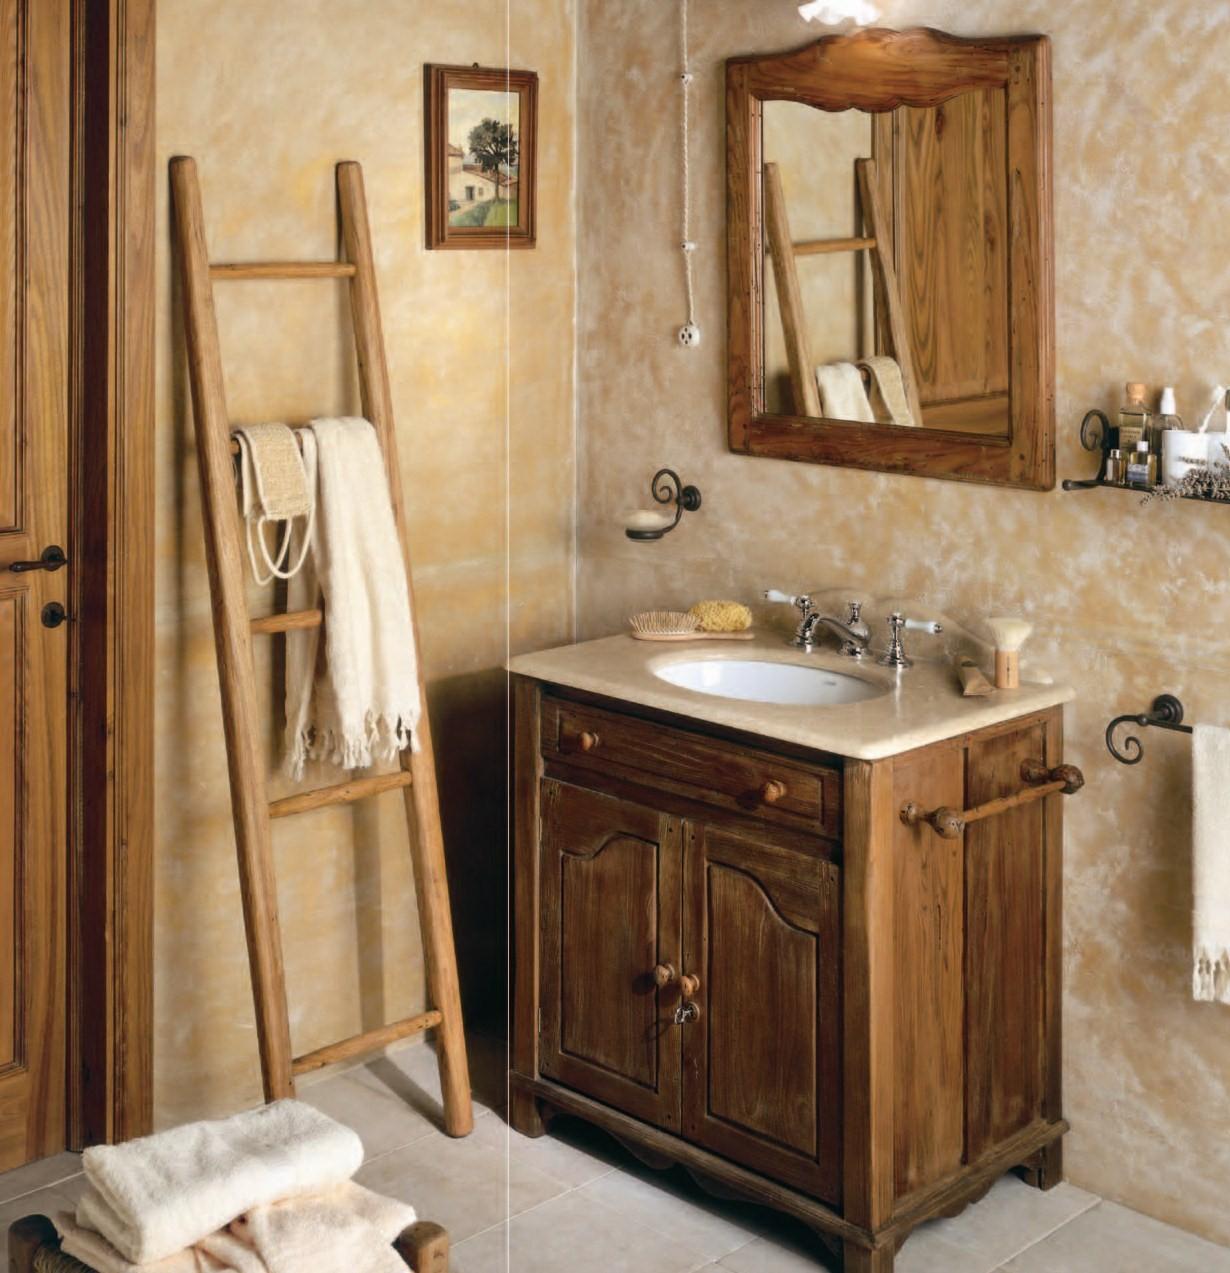 1 ванна мебель. Деревянная мебель для ванной комнаты. Мебель для ванной комнаты дерево. Деревянный шкаф в ванную комнату. Ванная с деревянной мебелью.